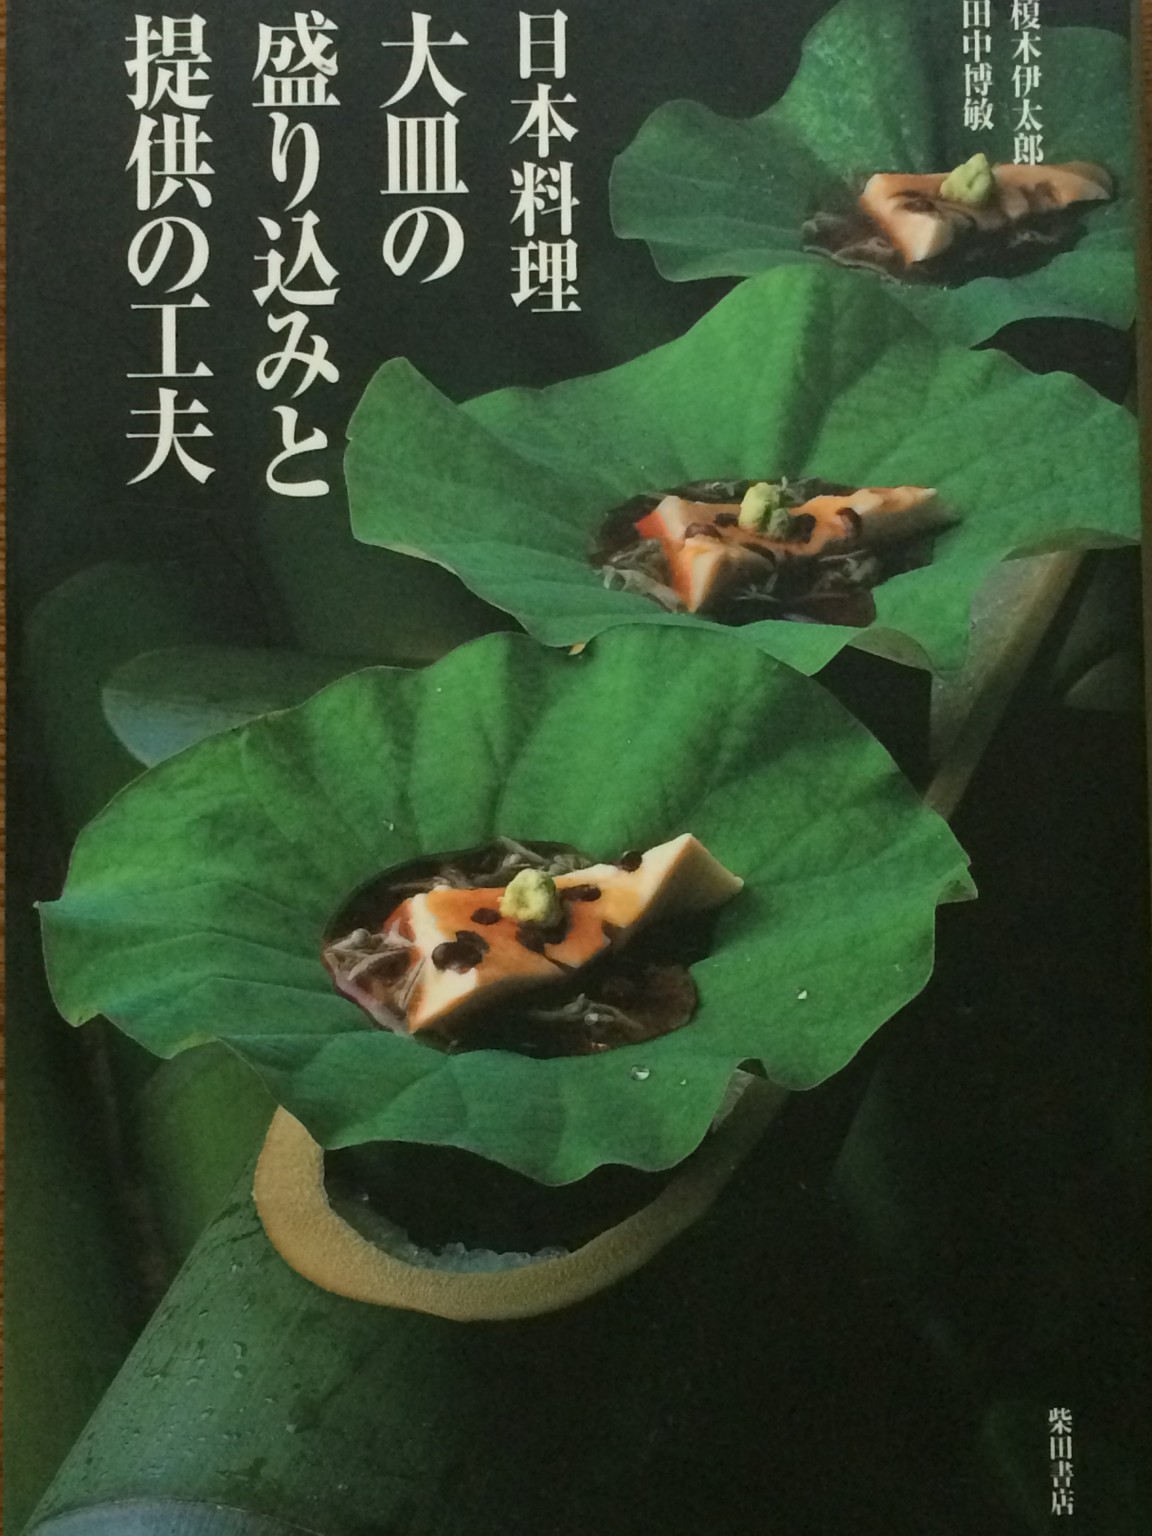 田中総料理長の本、僕も撮影用の料理を手伝いました。